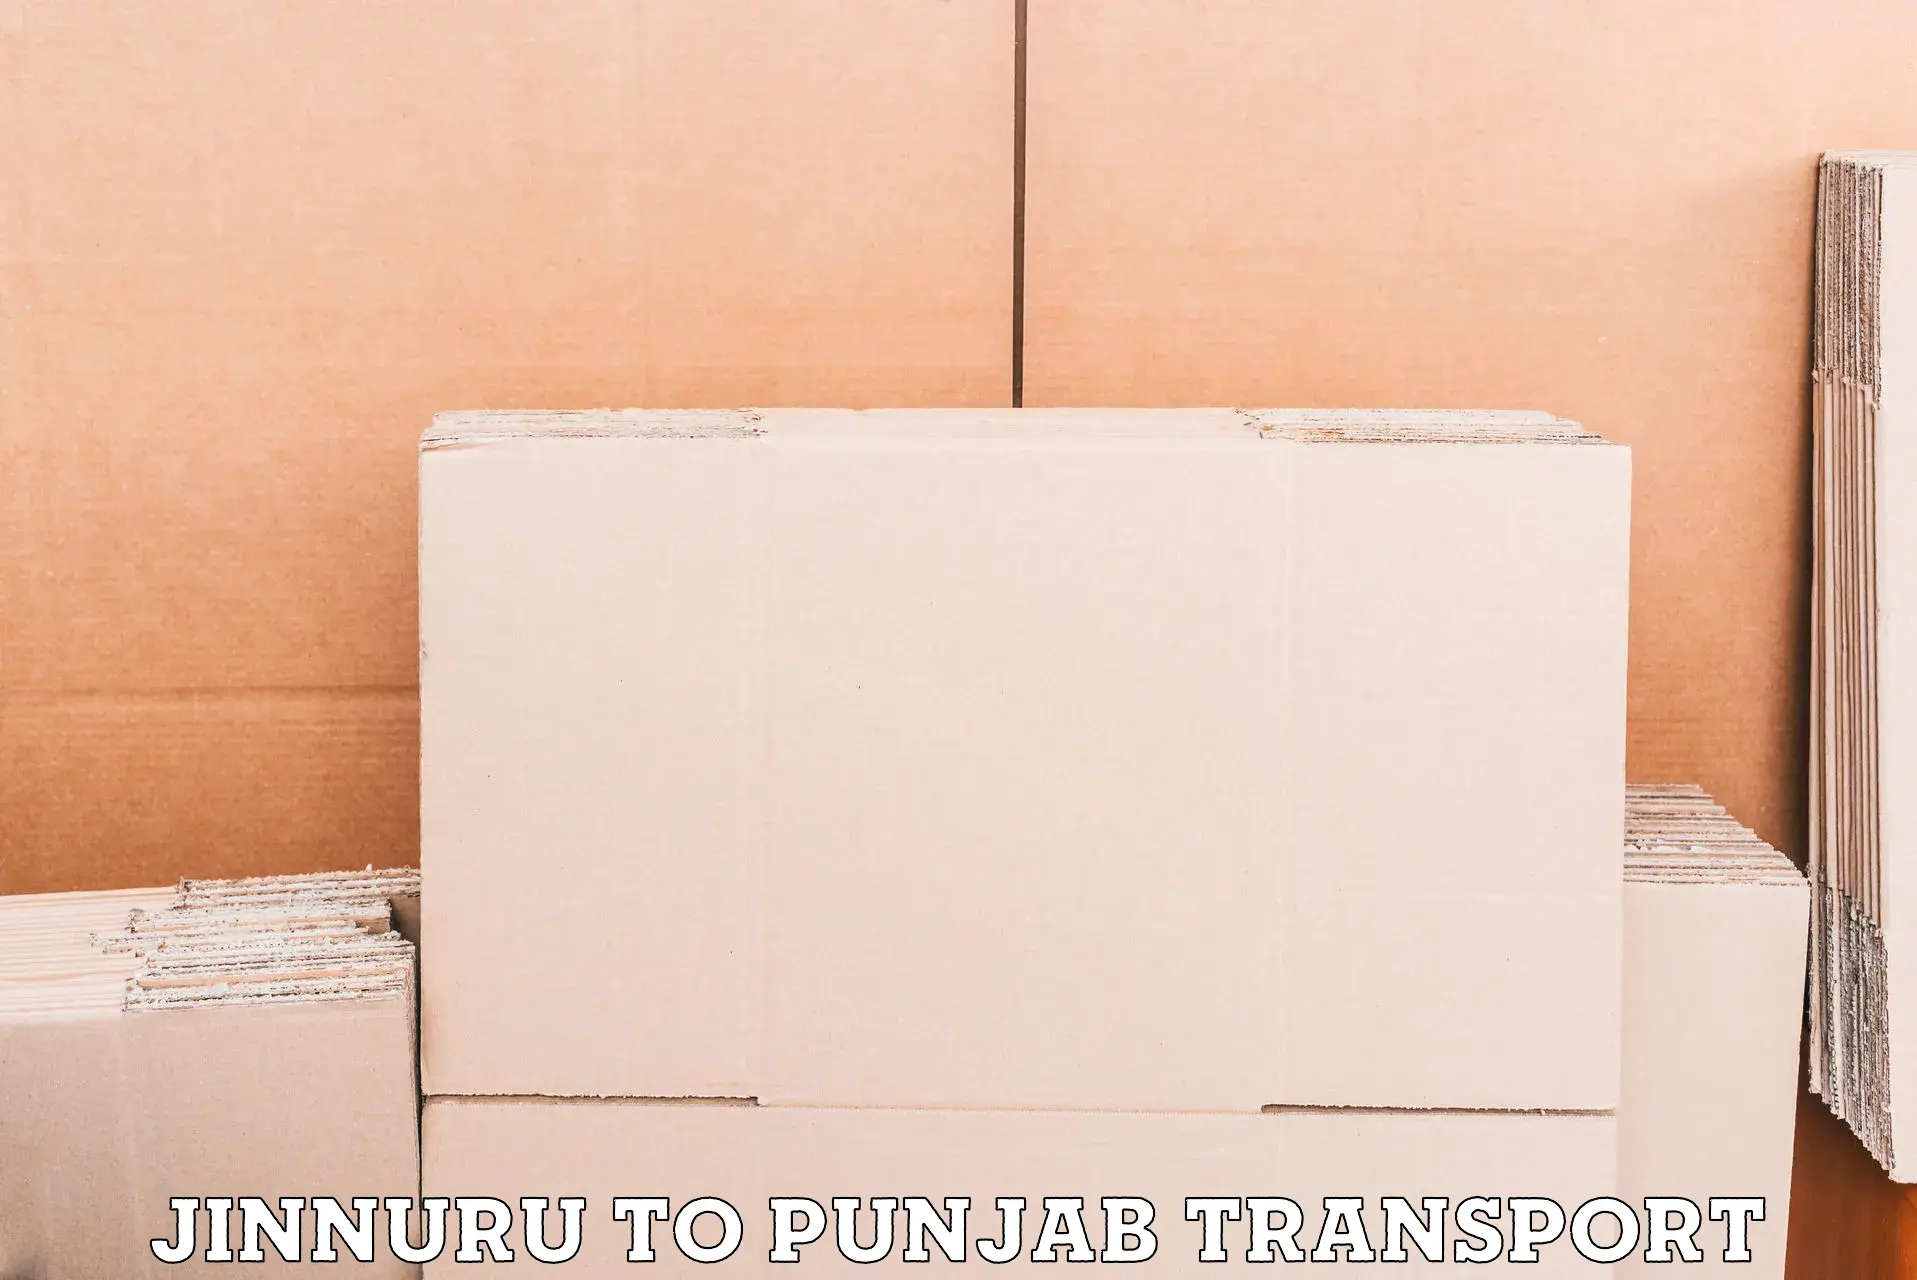 Delivery service Jinnuru to Jalandhar